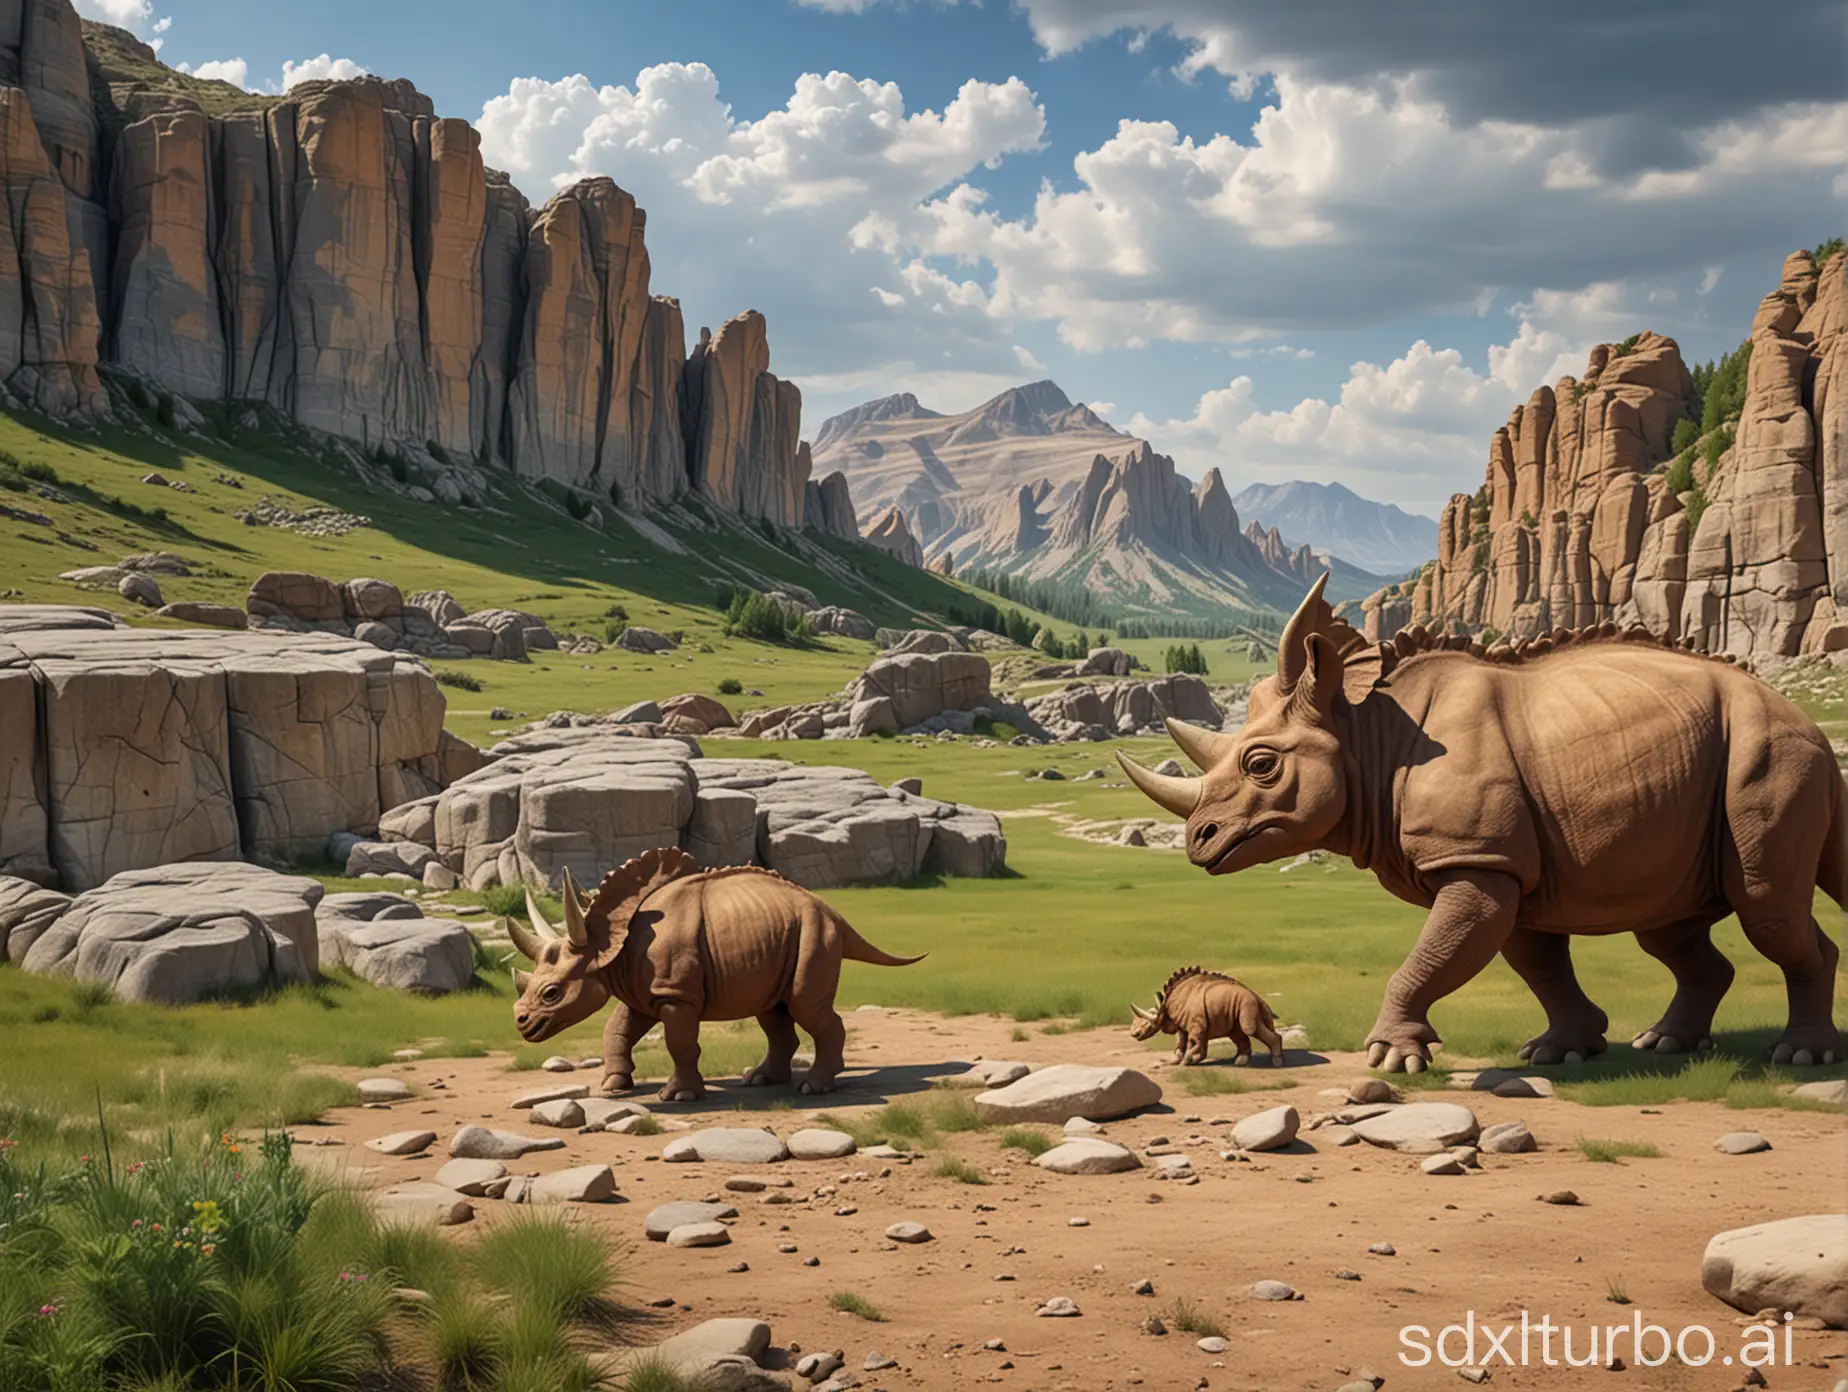 Hintergrund Felsen und Stroche, mitte wiese und Triceratops Familie